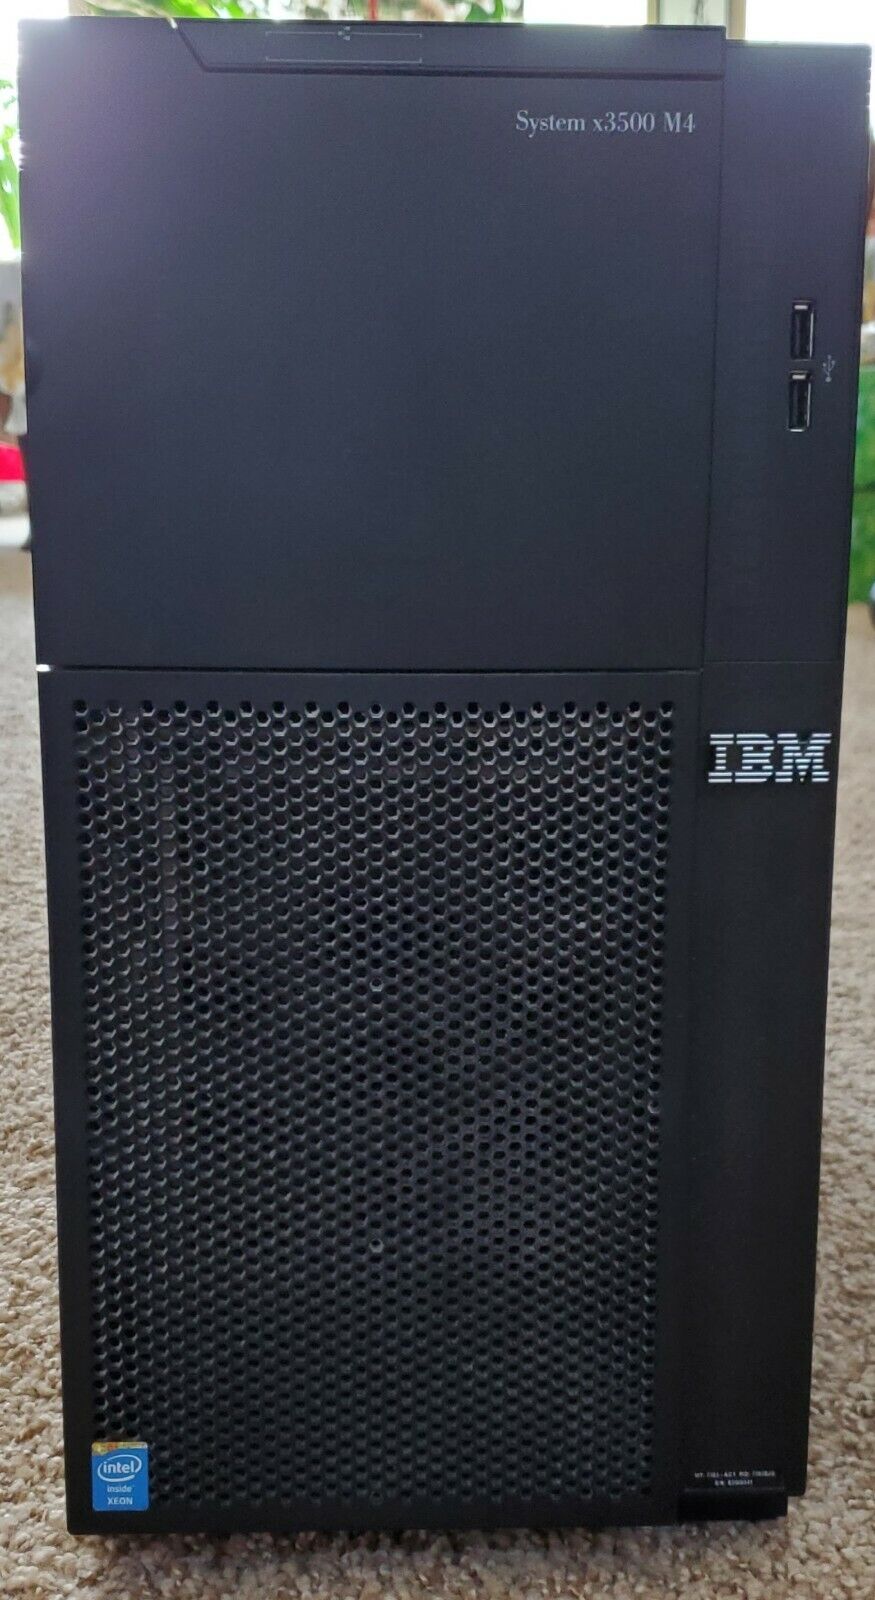 IBM System x 3500 M4 2x E5-2667v2 3.3GHz 64GB RAM 256GB SSD 1TB HDD M5110 RAID